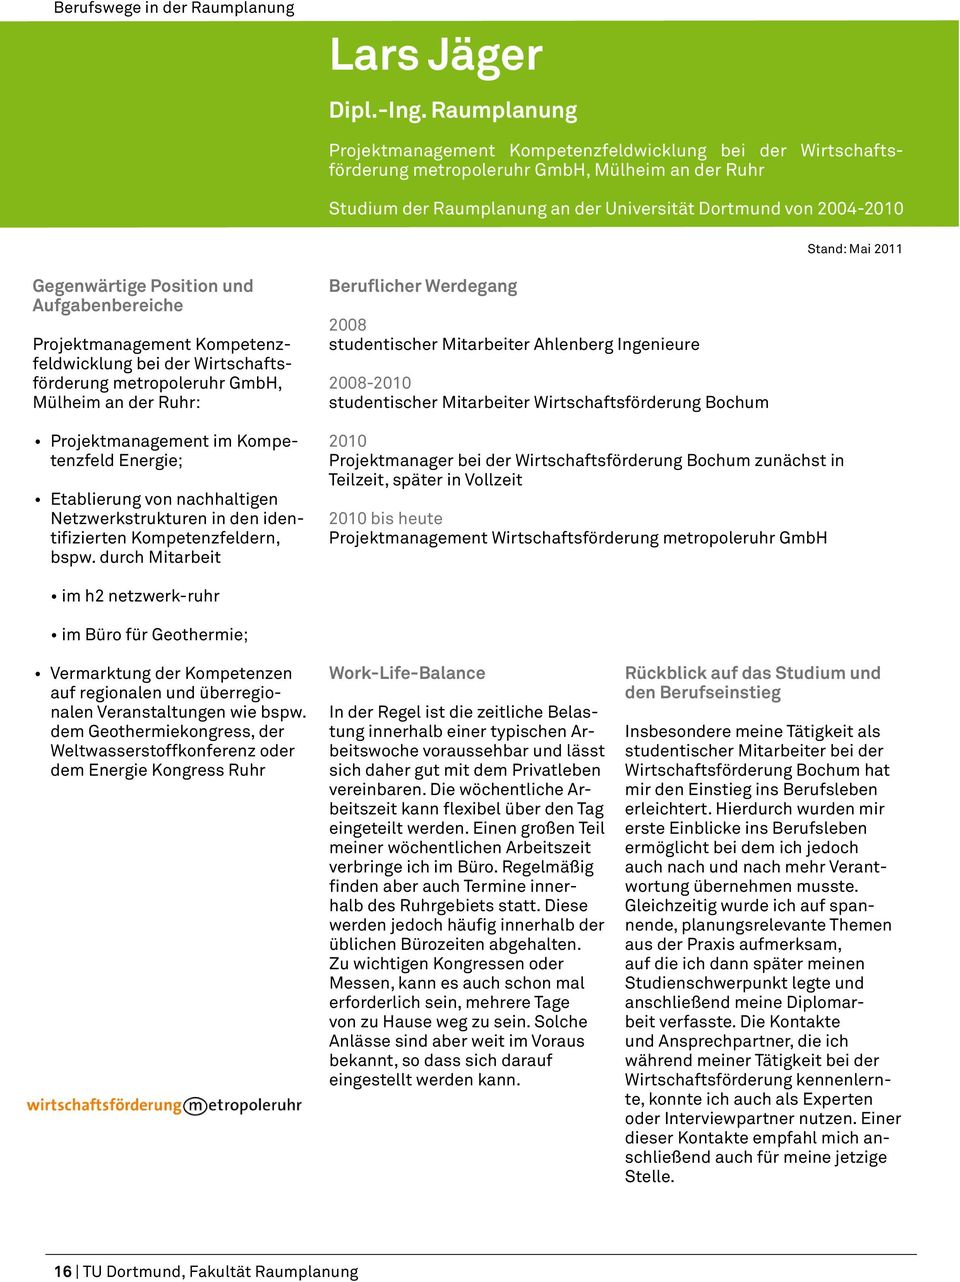 2011 Projektmanagement Kompetenzfeldwicklung bei der Wirtschaftsförderung metropoleruhr GmbH, Mülheim an der Ruhr: Projektmanagement im Kompetenzfeld Energie; Etablierung von nachhaltigen